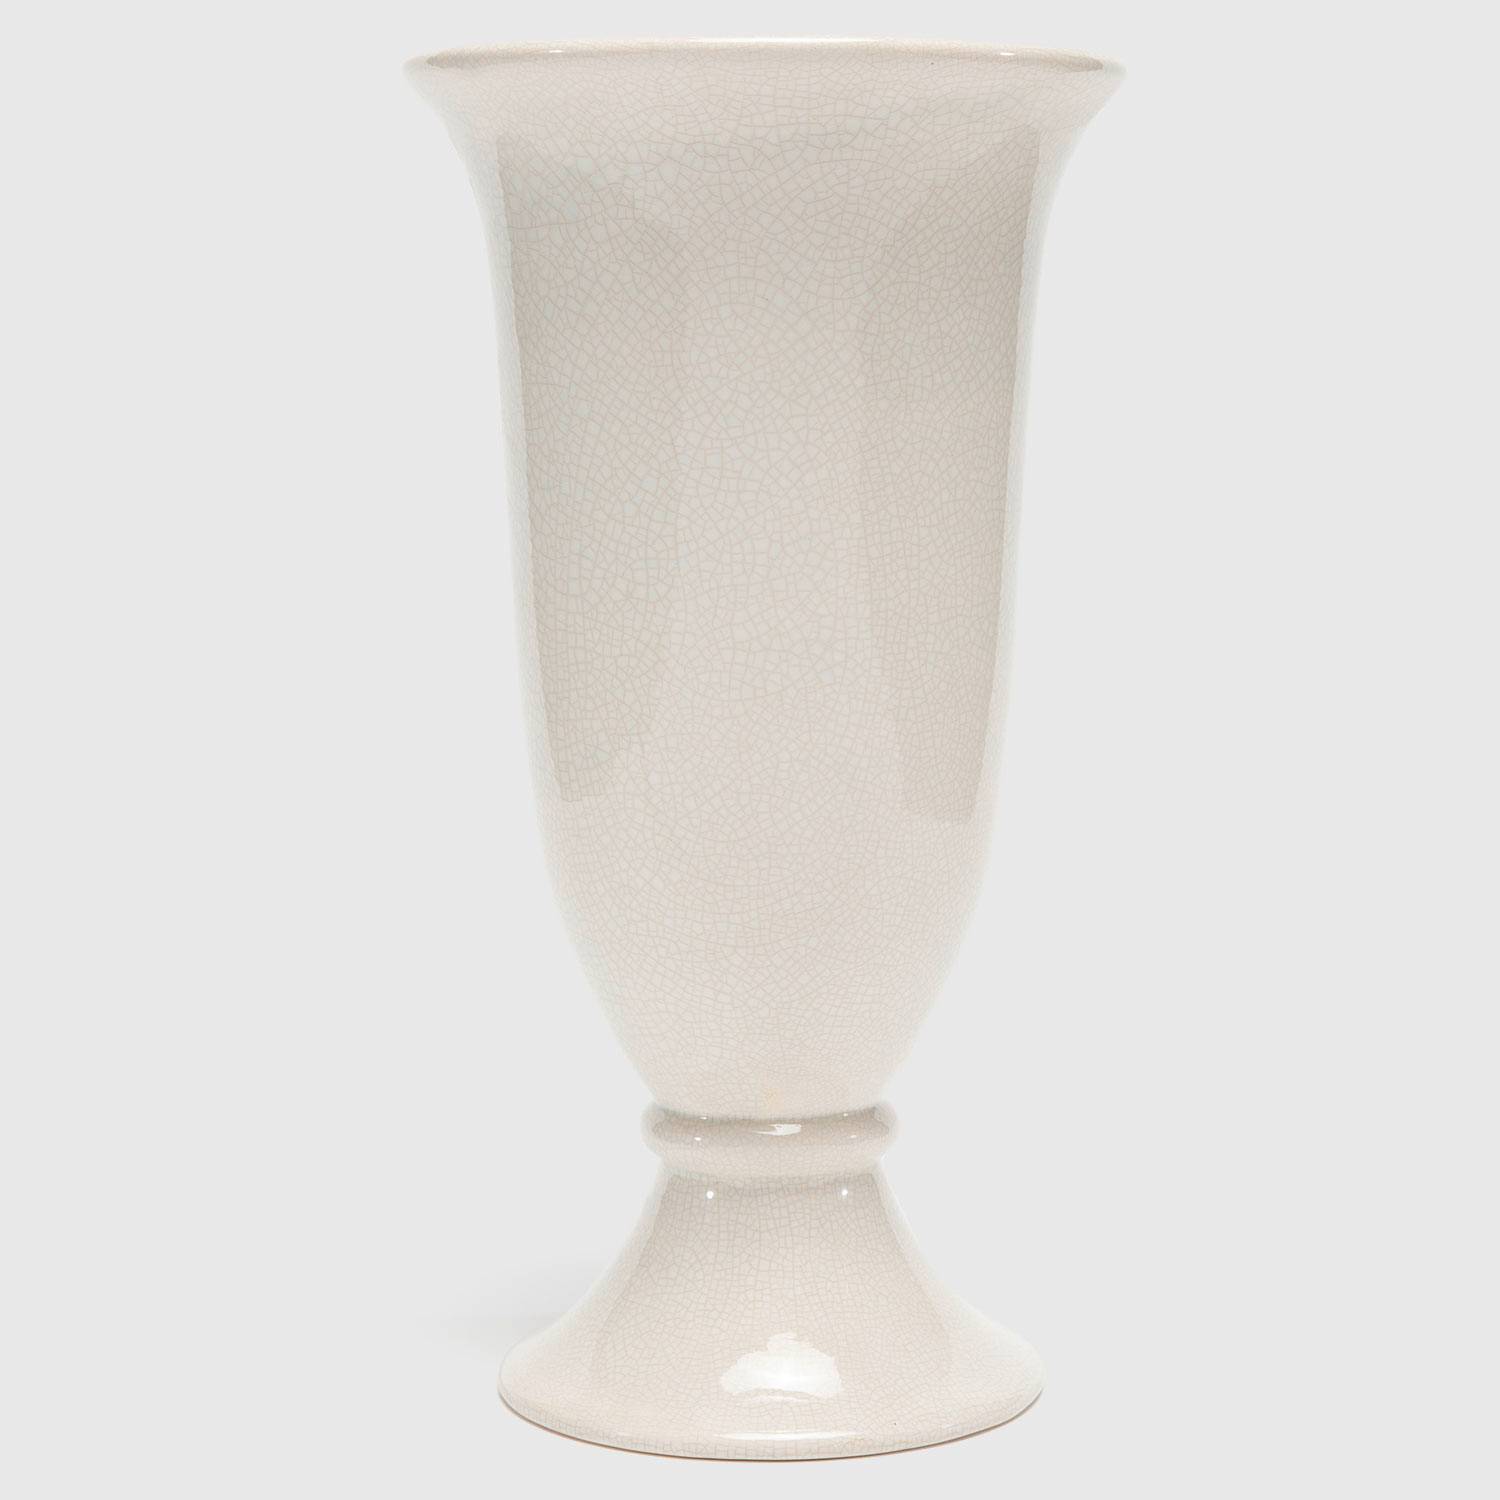 Florero de cerámica, jarrones decorativos blanco Ø15cm  H14.5cm juego de 2-03826